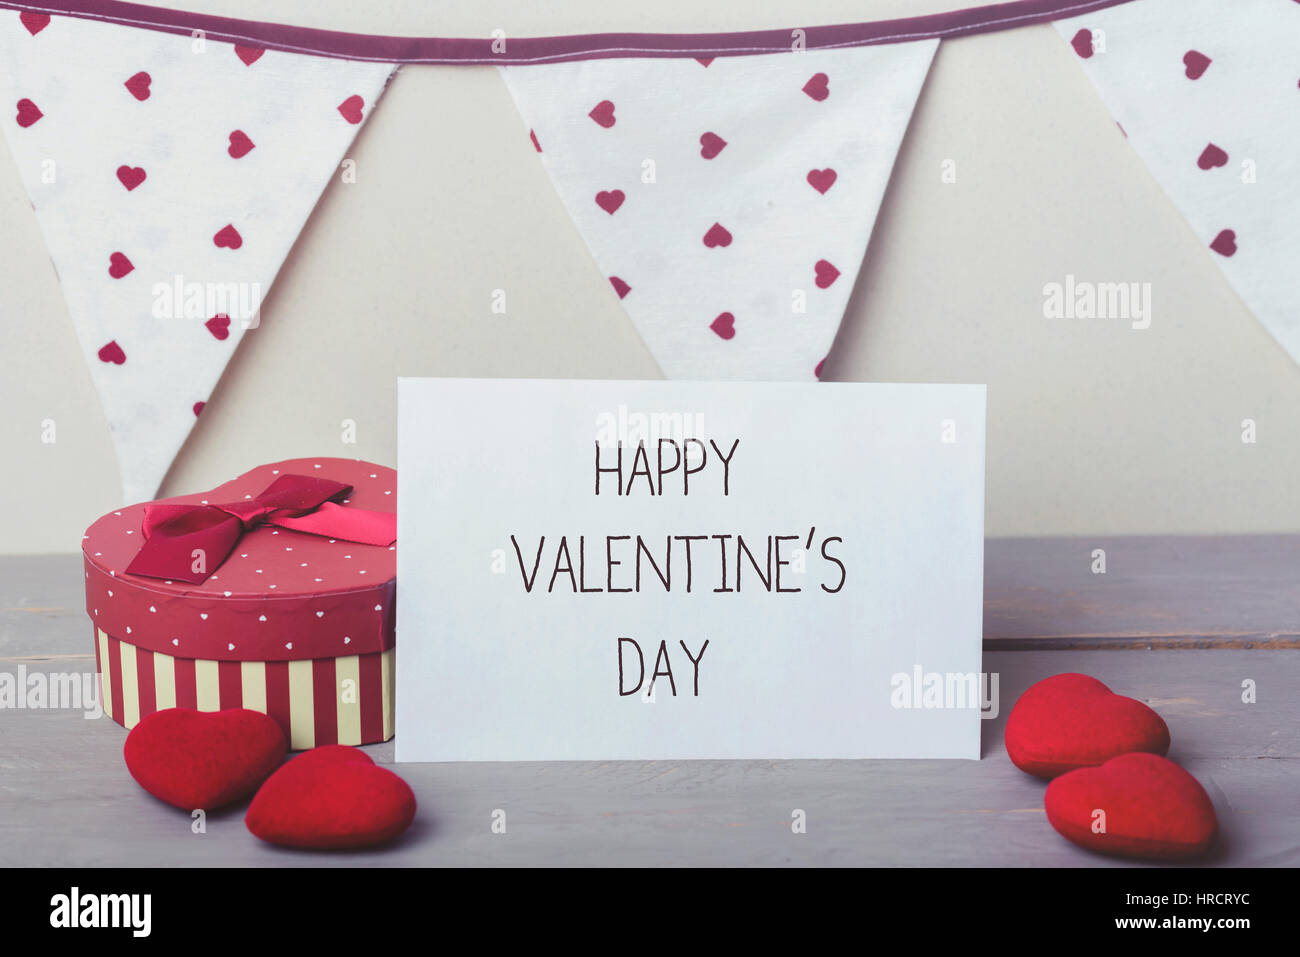 Happy Valentine's day Stock Photo